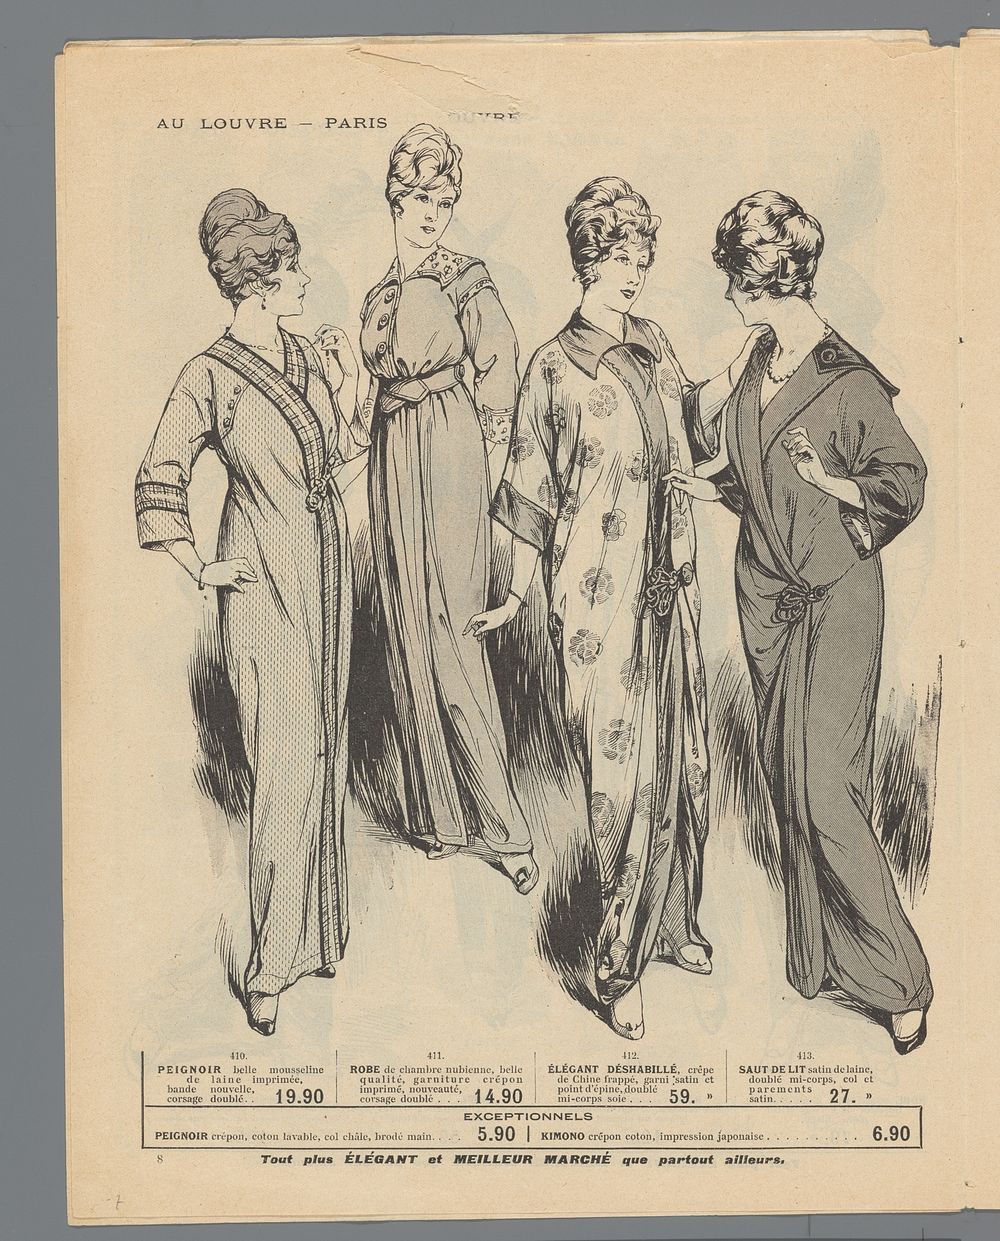 Au Louvre, Paris: Lundi 2 Mars: Nouveautés d'été:  pagina 8: peignoirs en nachtkleding voor vrouwen (c. 1913 - c. 1915) by…